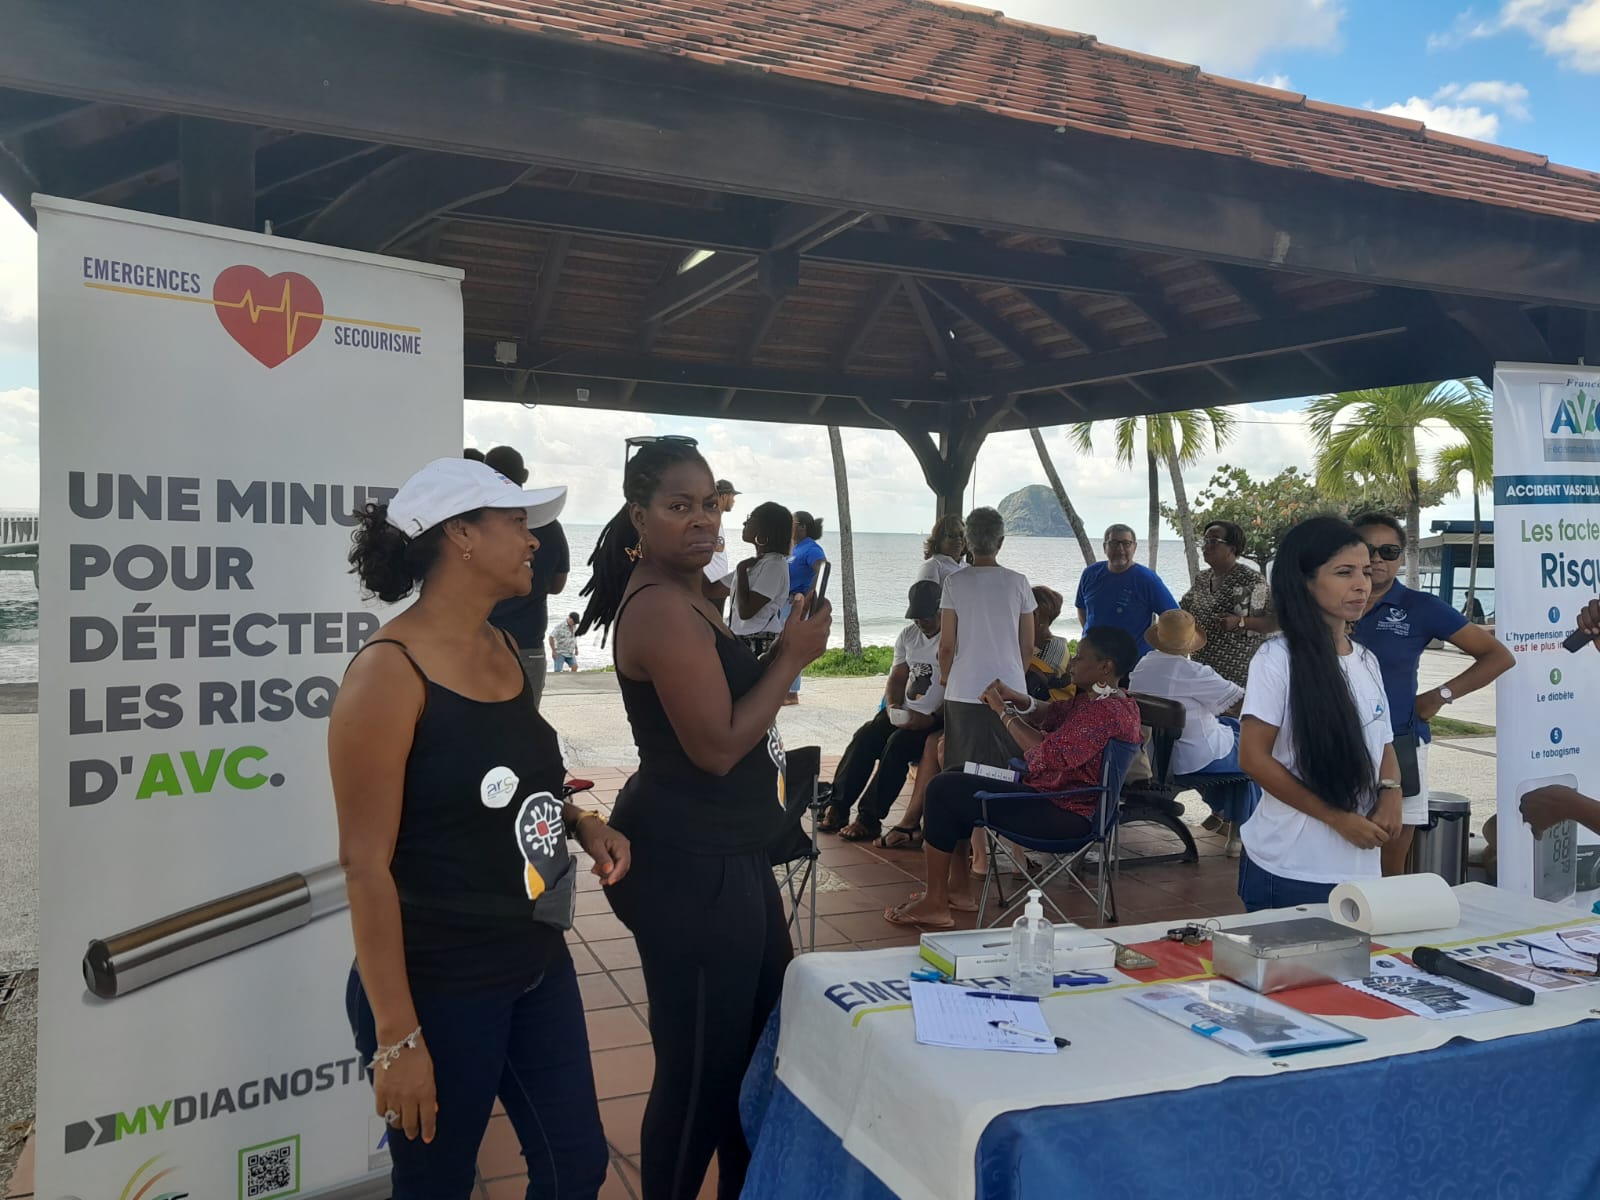     Risques d’AVC, 800 personnes concernées tous les ans en Martinique 

